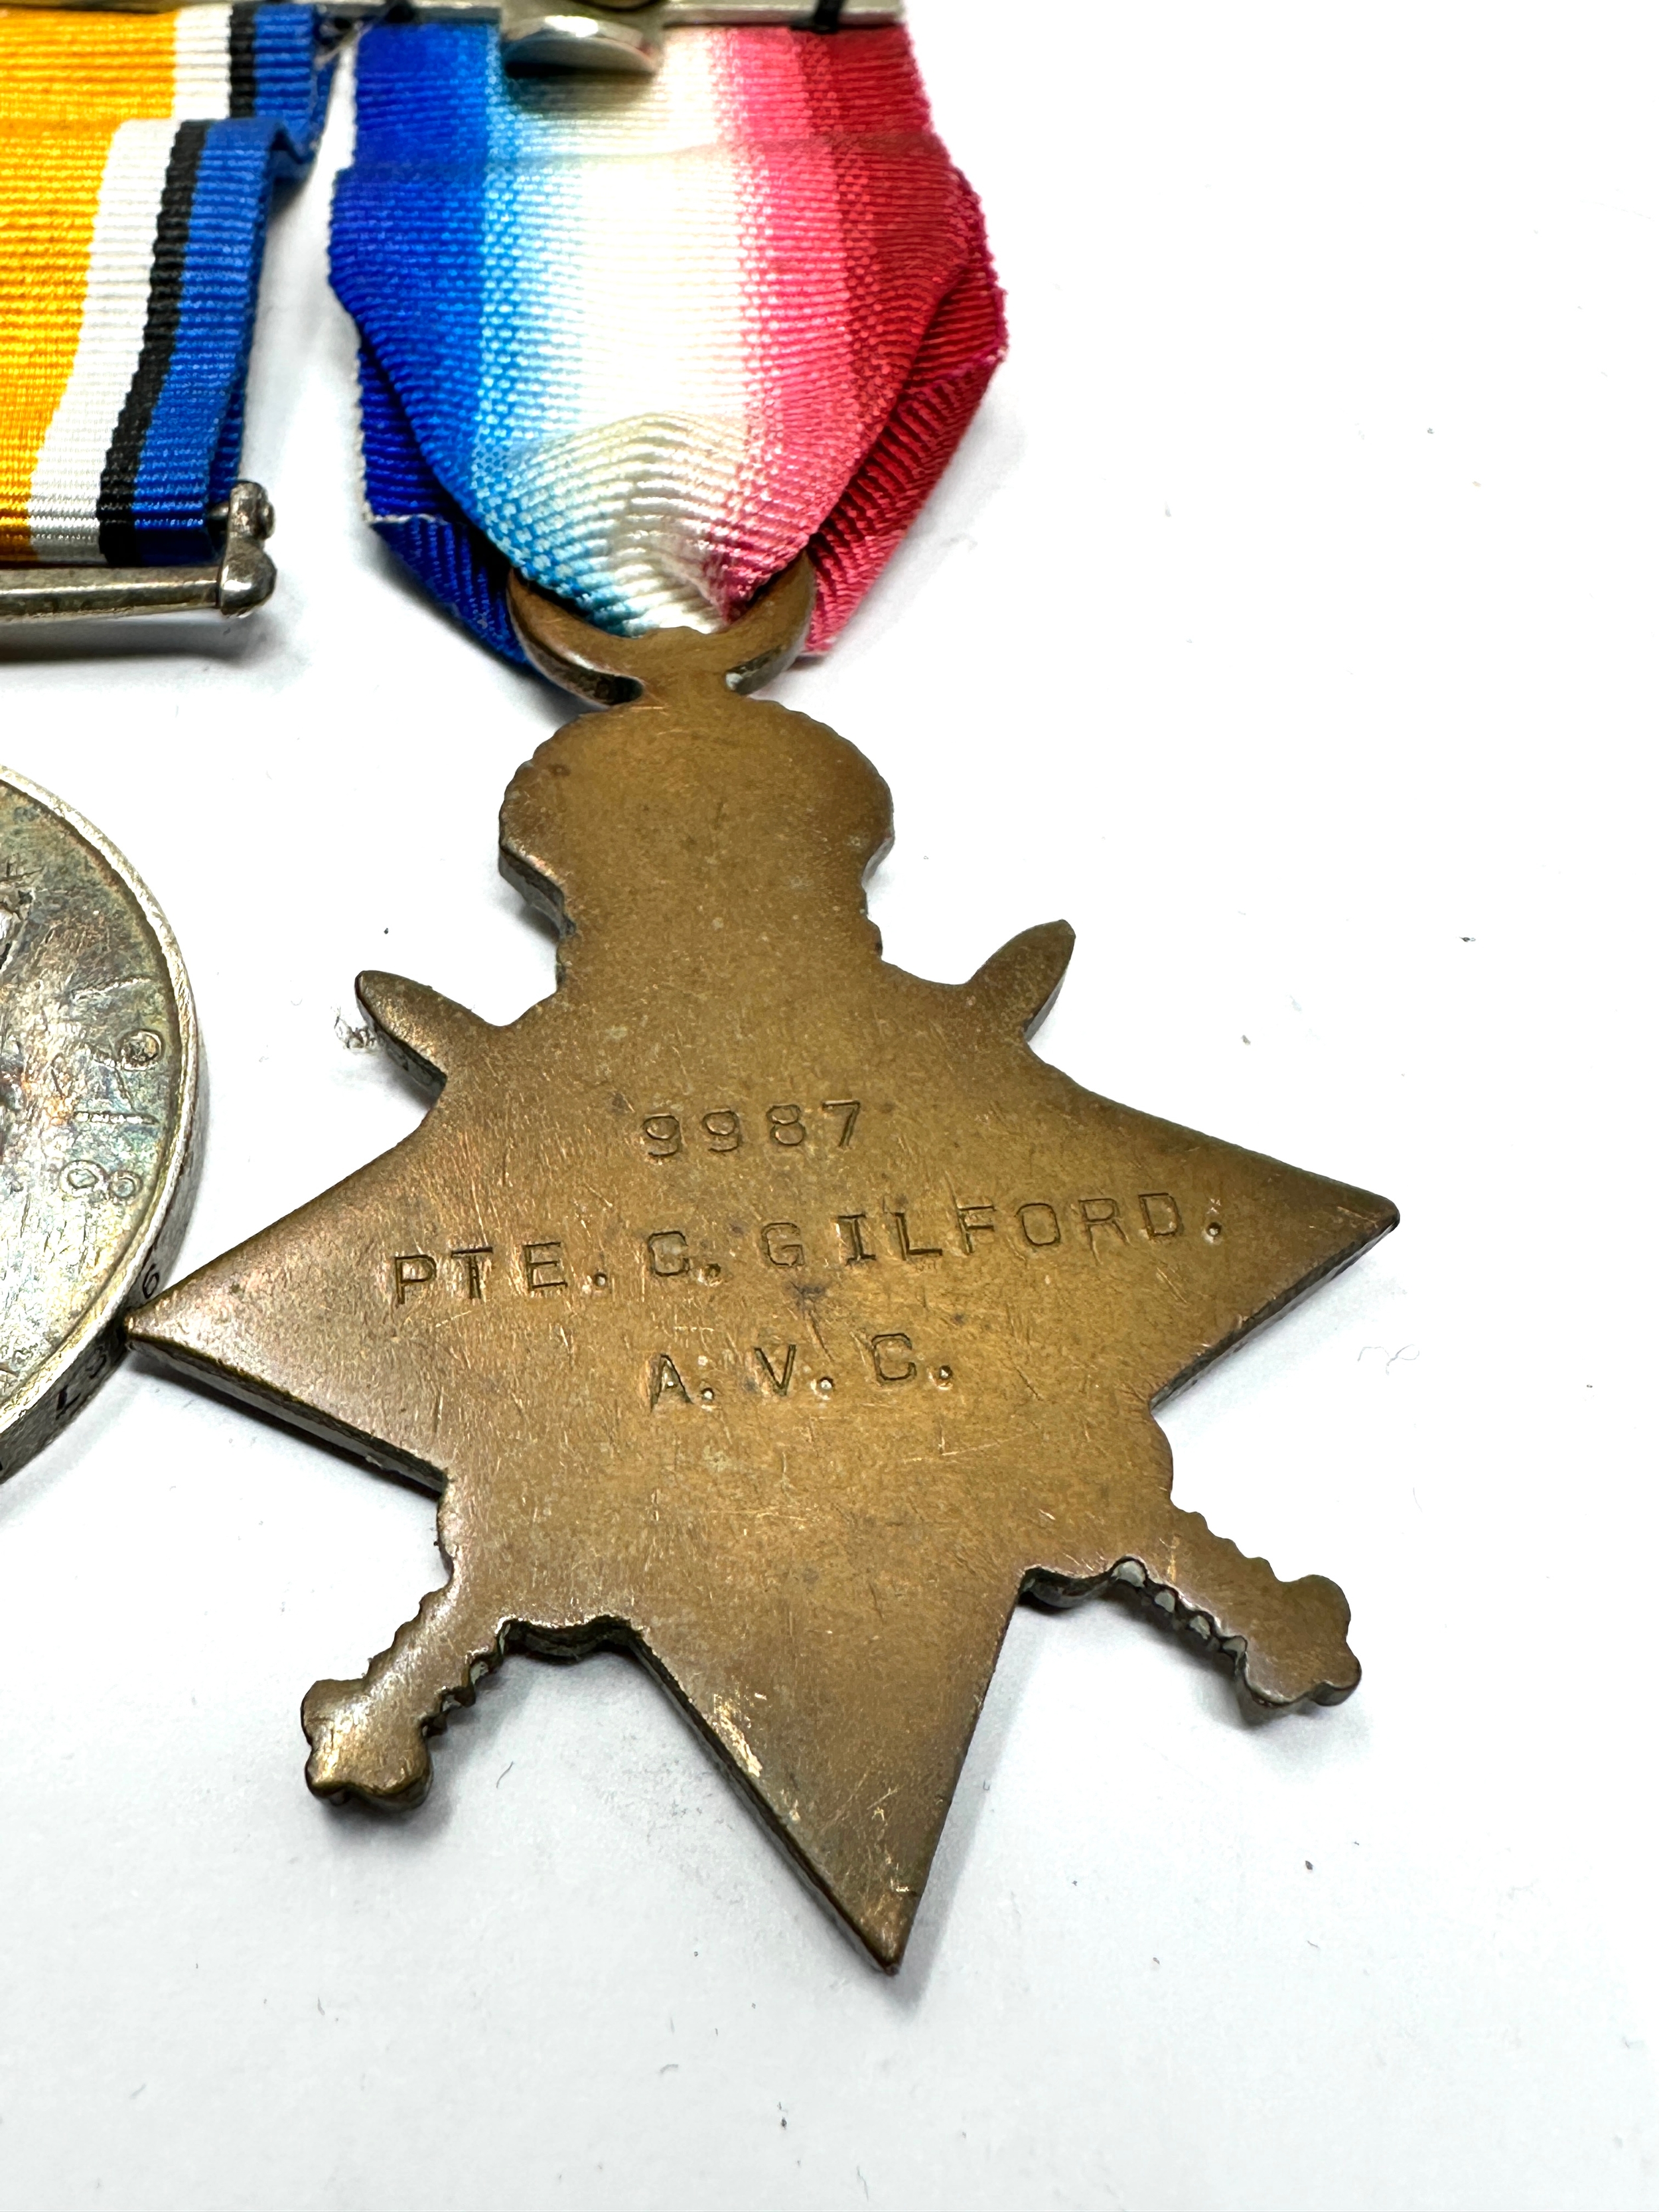 ww1 trio medals to 9987 pte.c.gilford a.v.c - Image 3 of 3